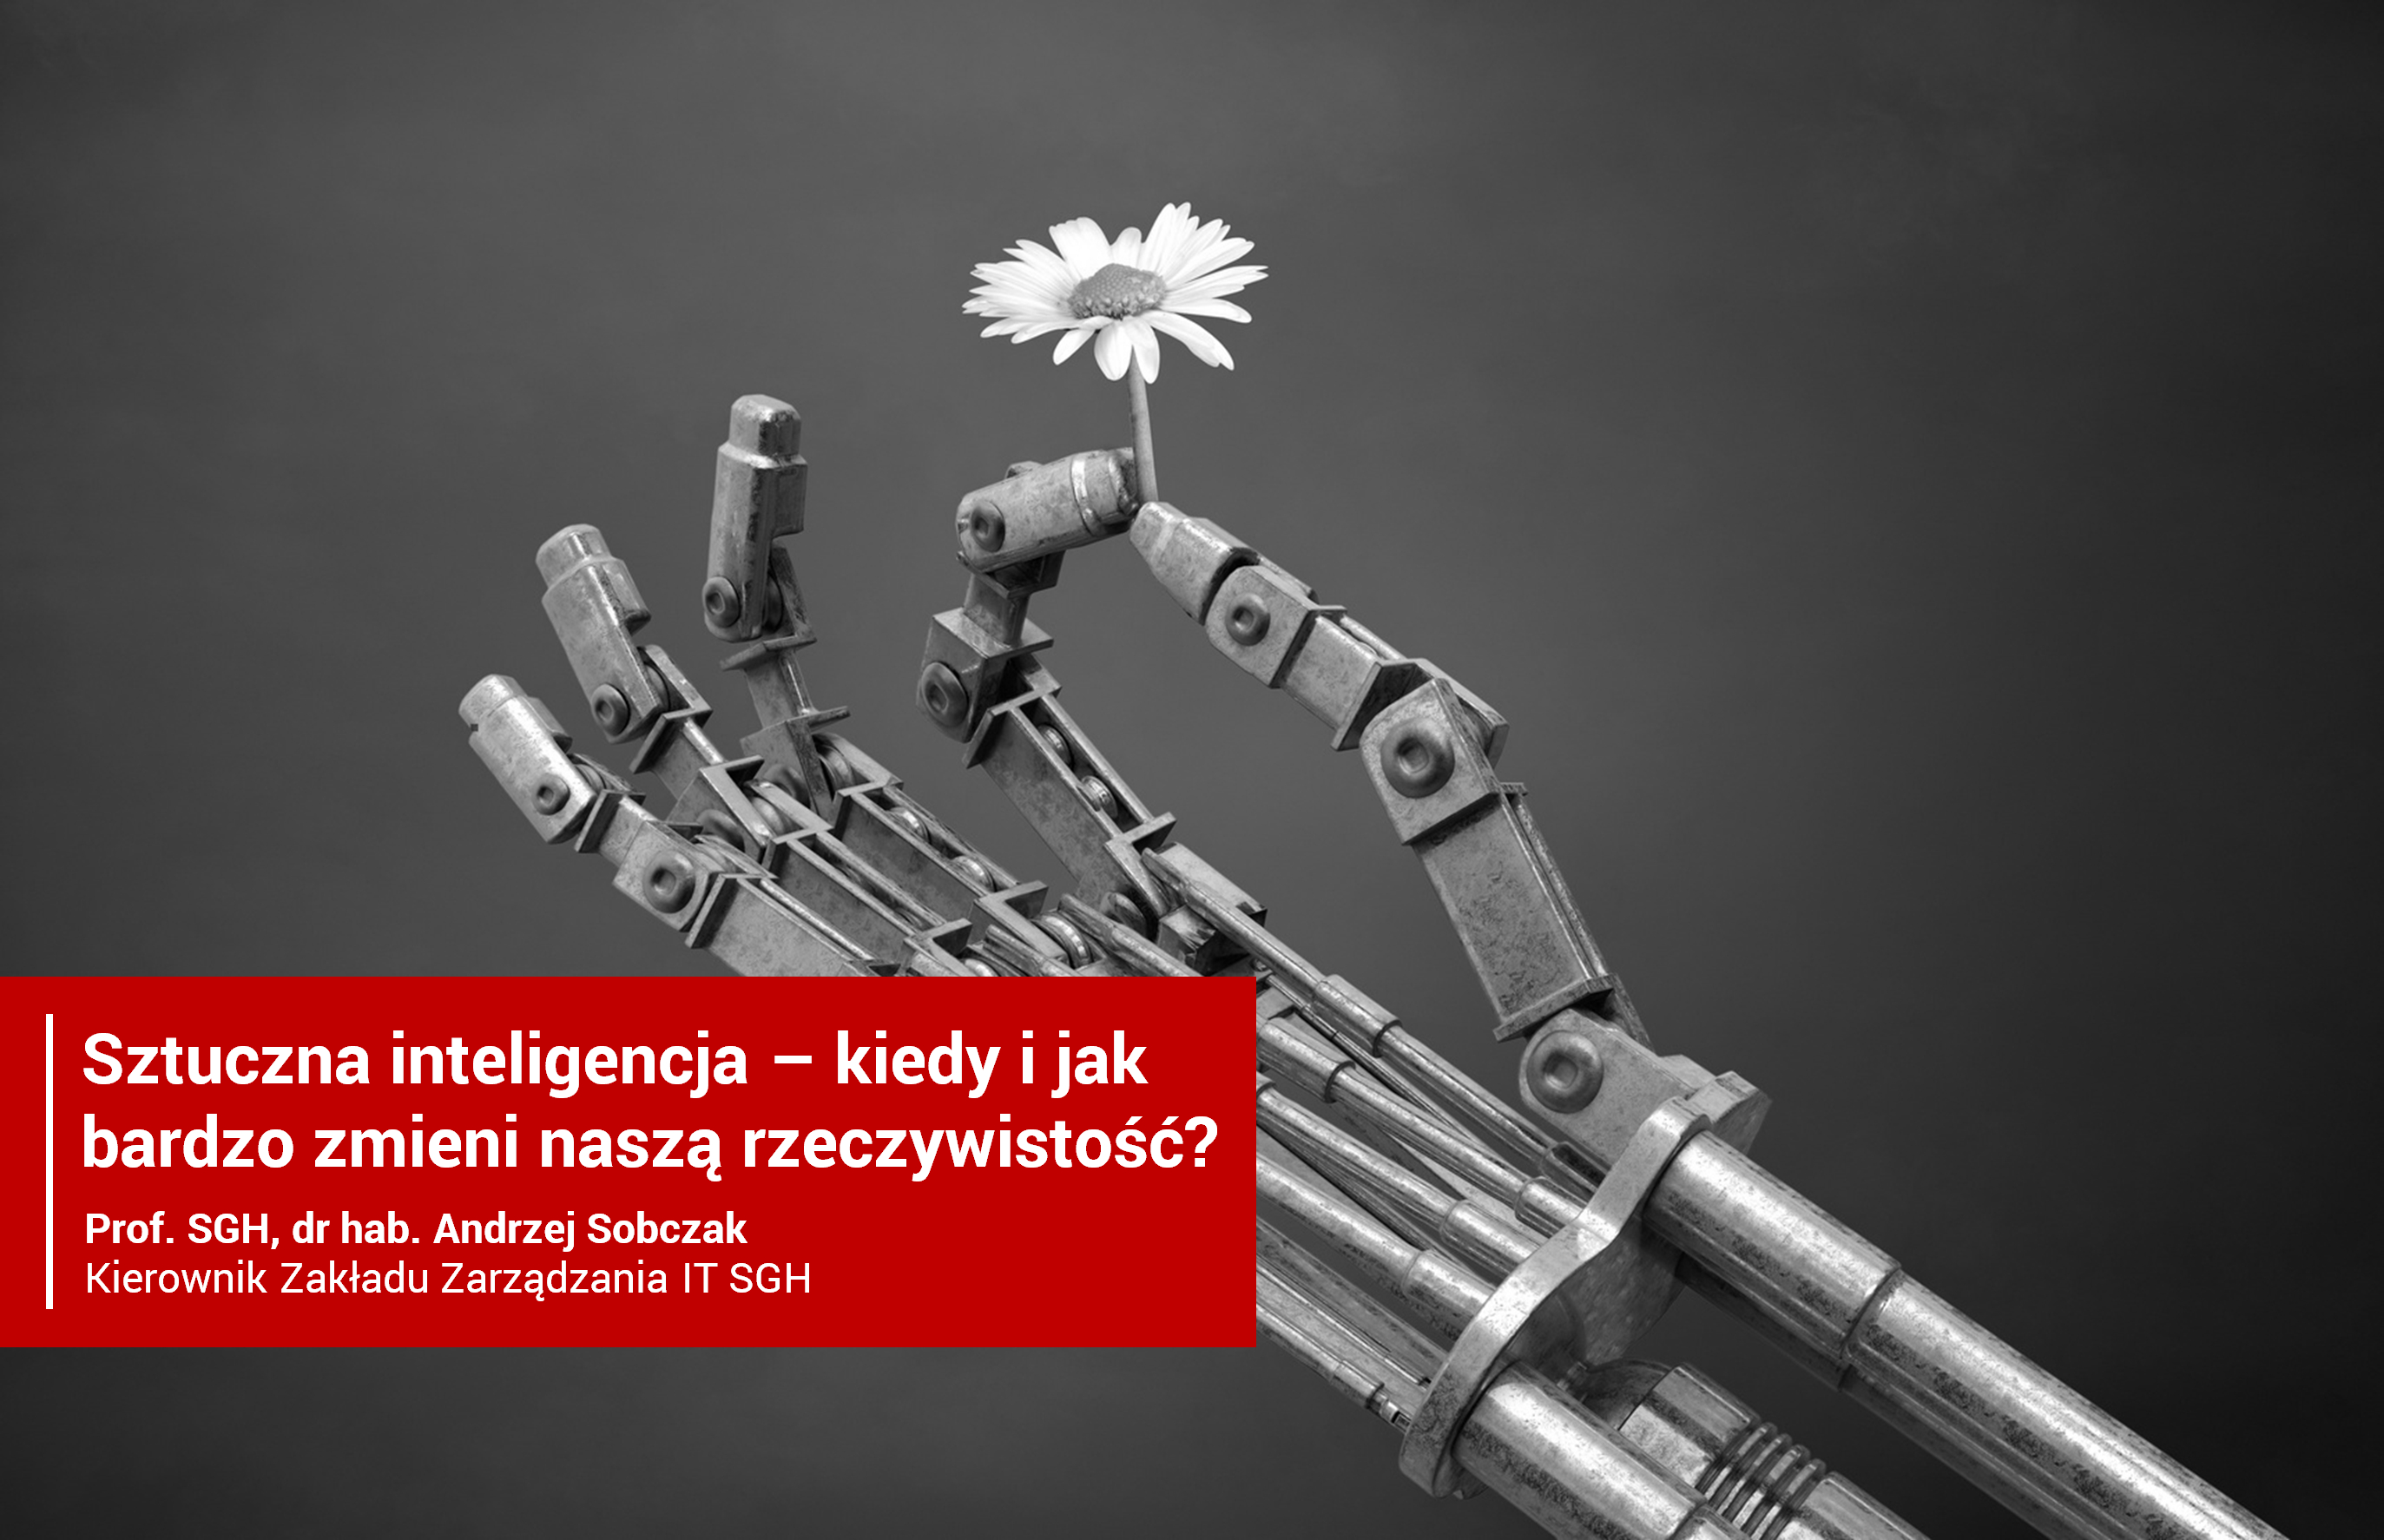 Sztuczna inteligencja: kiedy i jak bardzo zmieni naszą rzeczywistość - moja prezentacja ze spotkania w Związku Banków Polskich